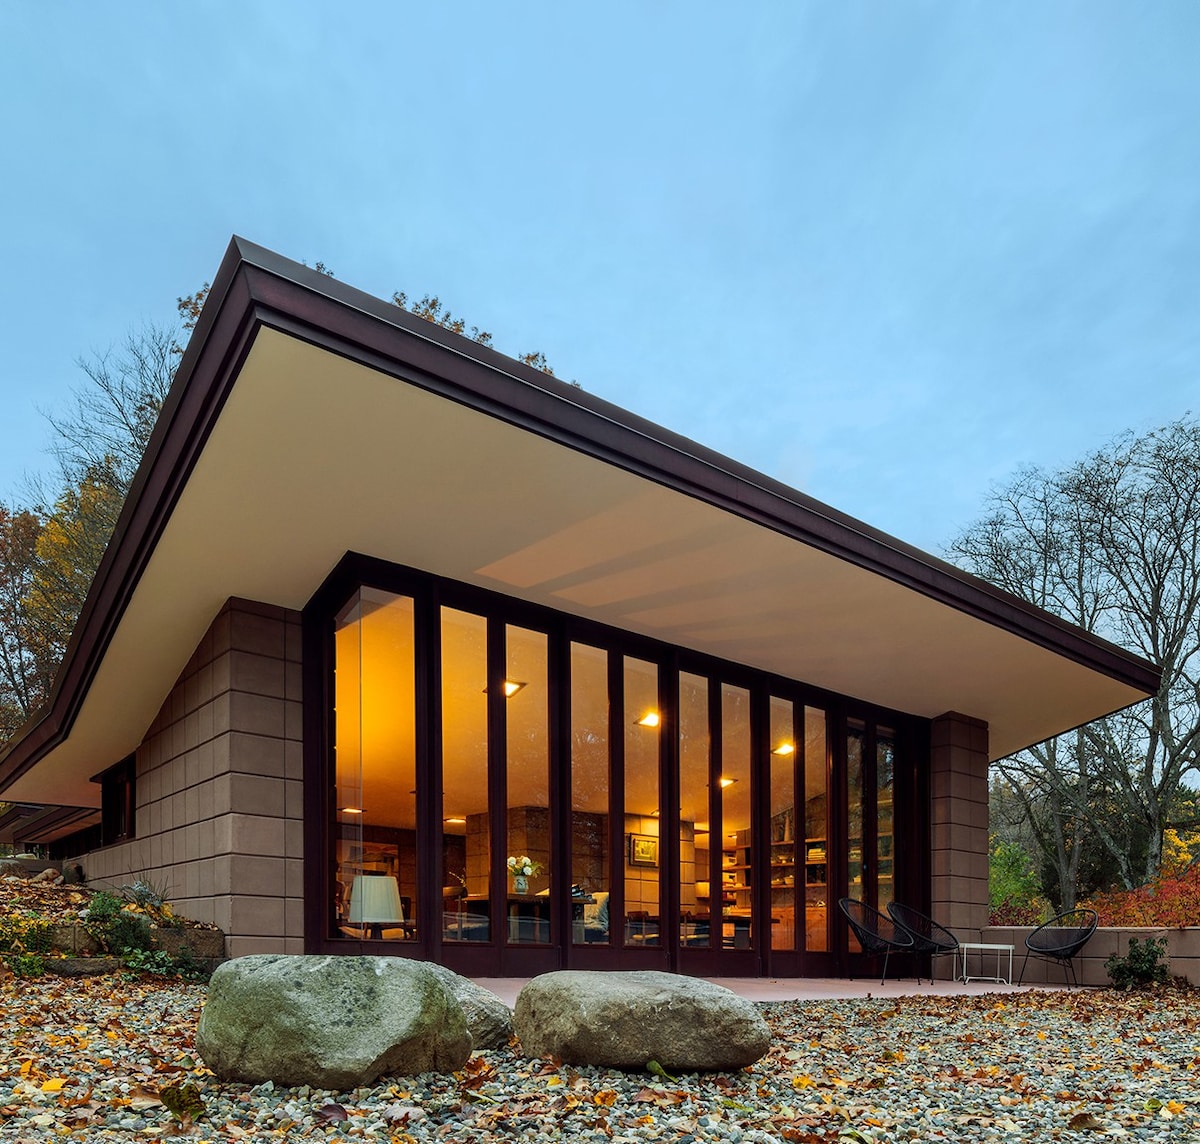 Una casa increíble de ladrillo diseñada por Frank Lloyd Wright, ubicada en un entorno natural con ventanas del piso al techo que cubren todo un costado.